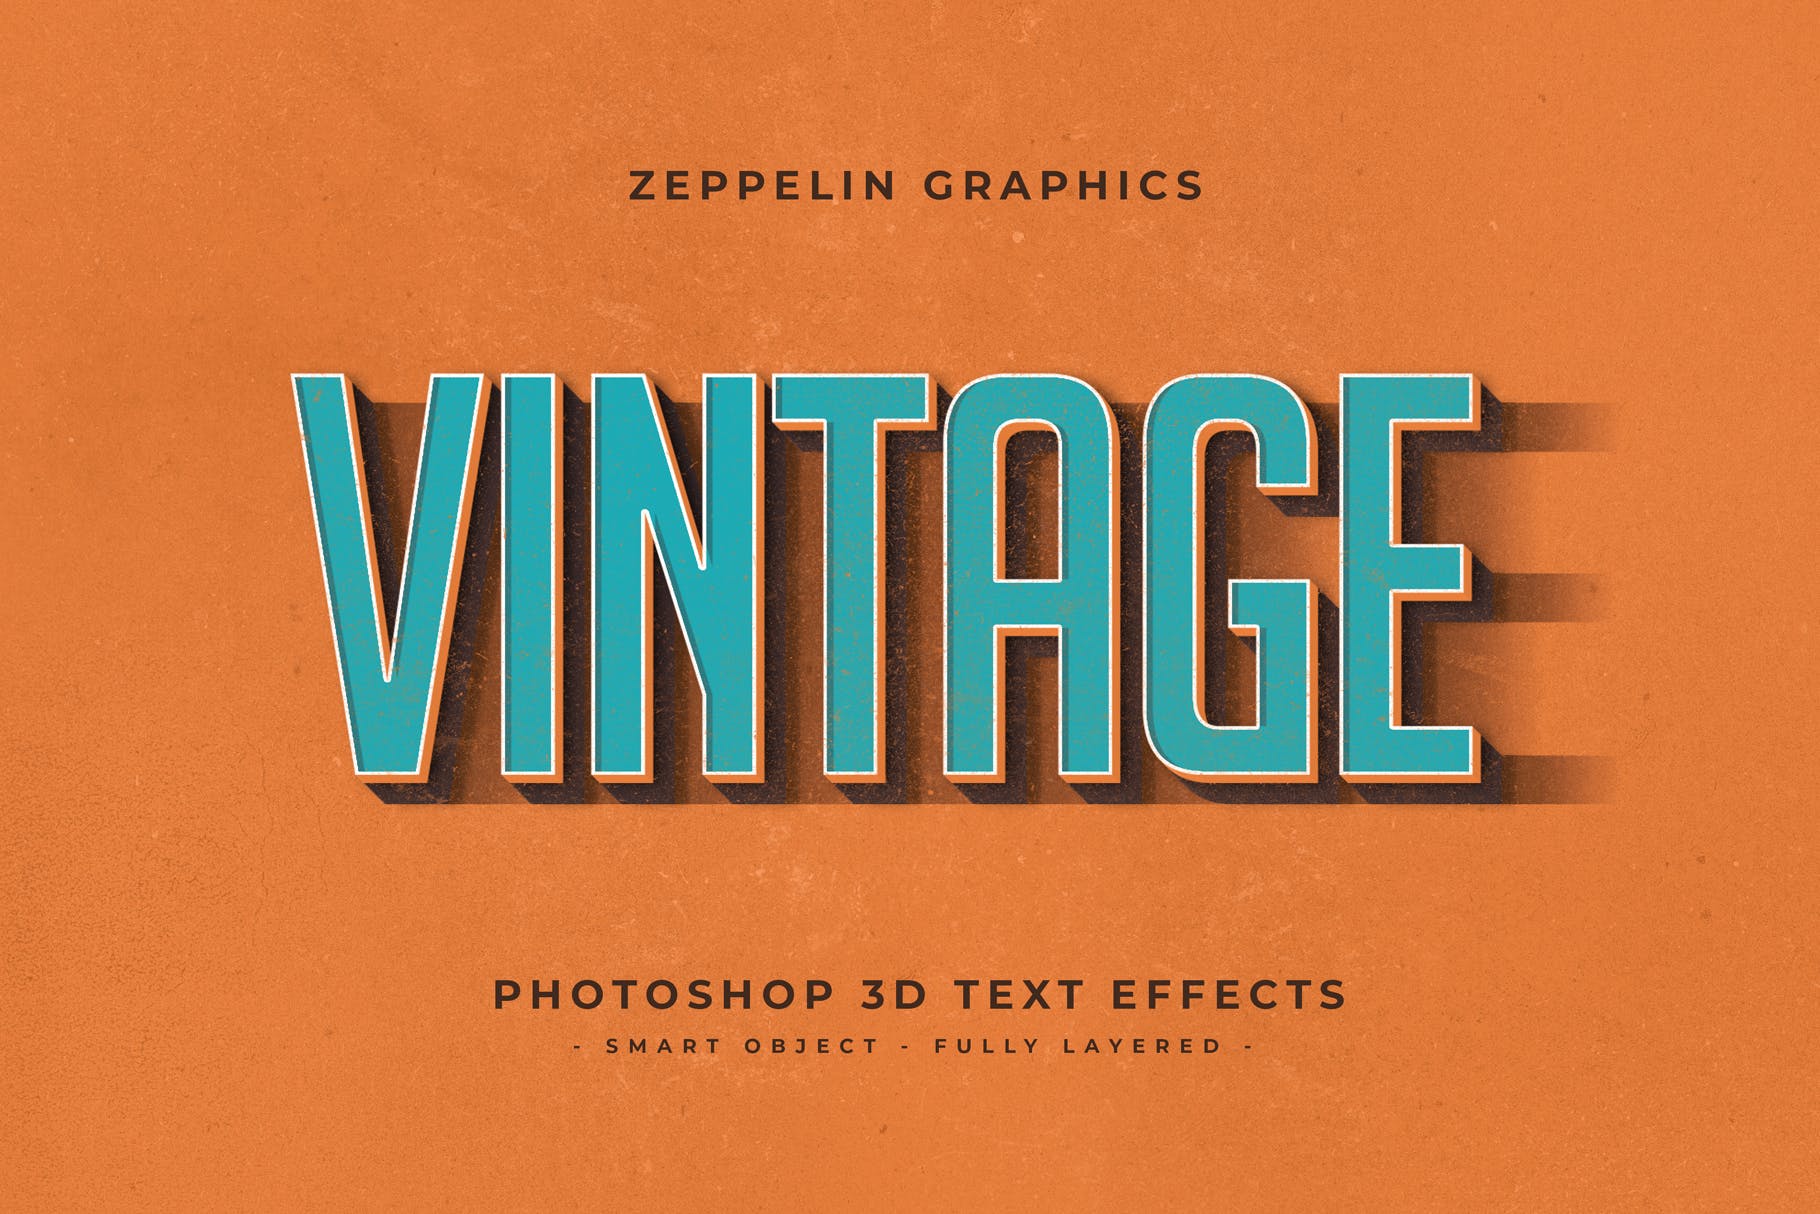 复古设计风格3D立体字体样式PSD分层模板v7 Vintage Text Effects Vol.7插图8